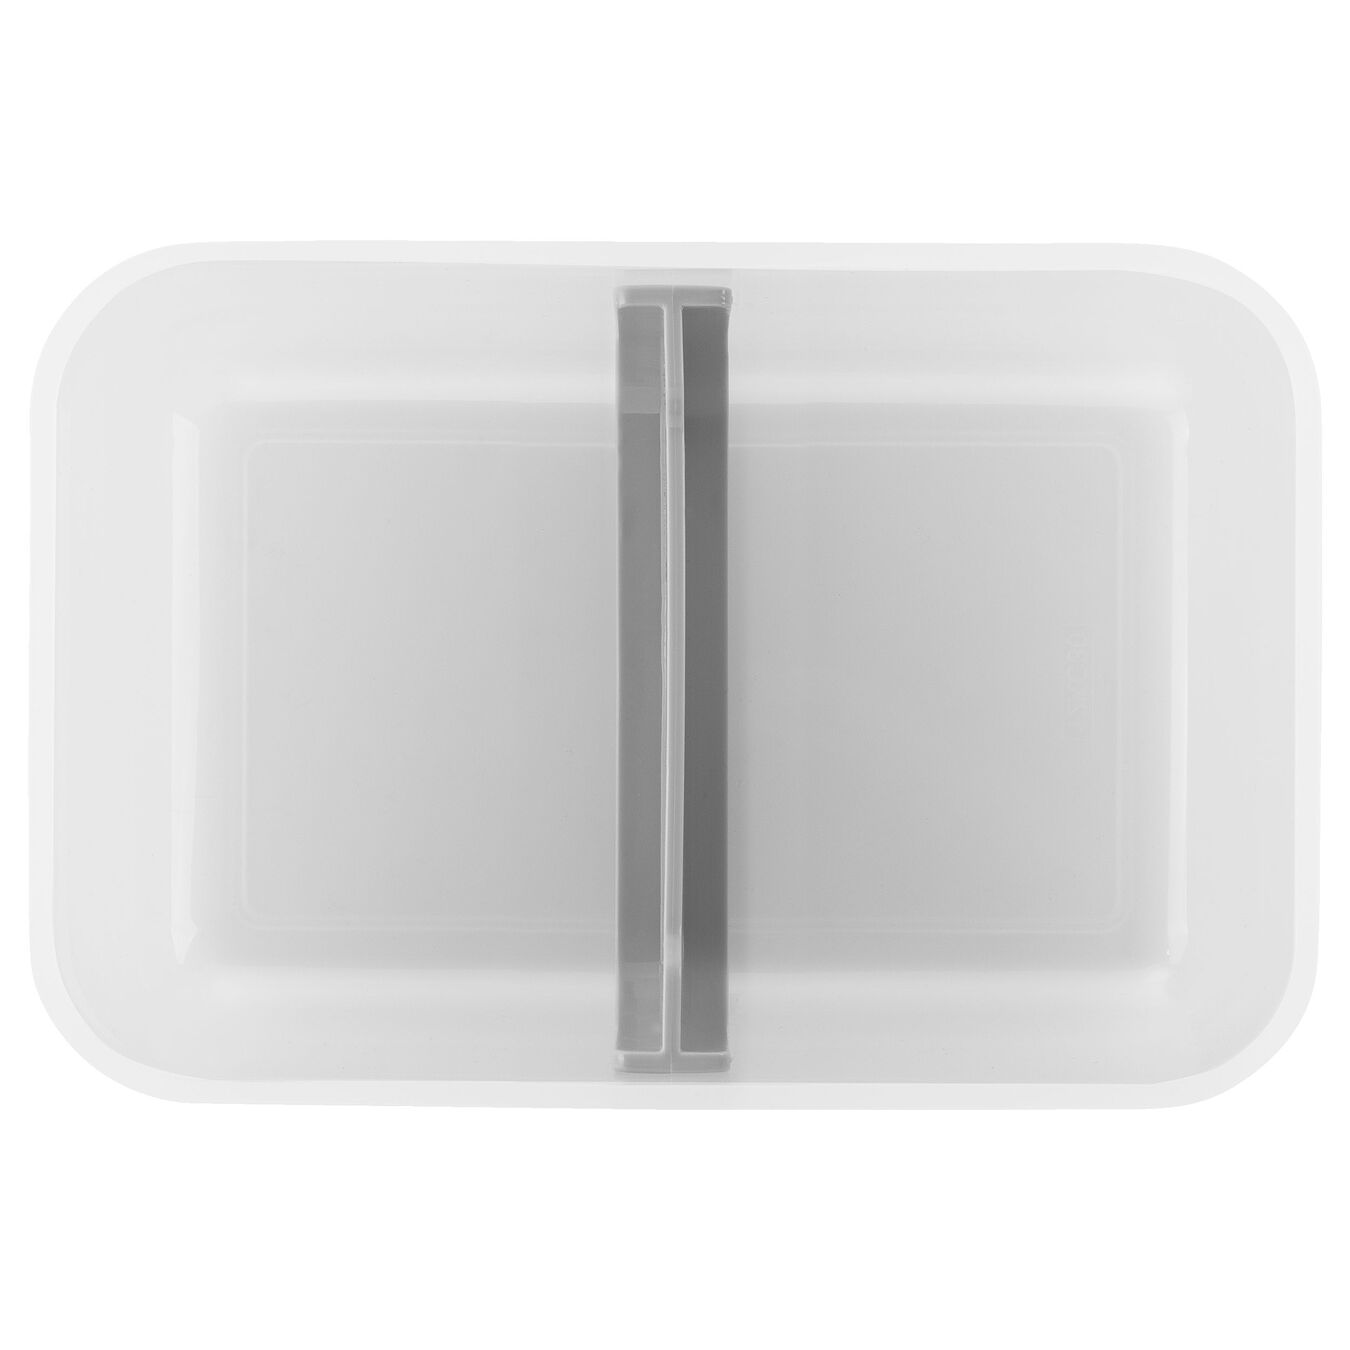 Lunch box sottovuoto L, plastica, semi transparente-grigio,,large 4